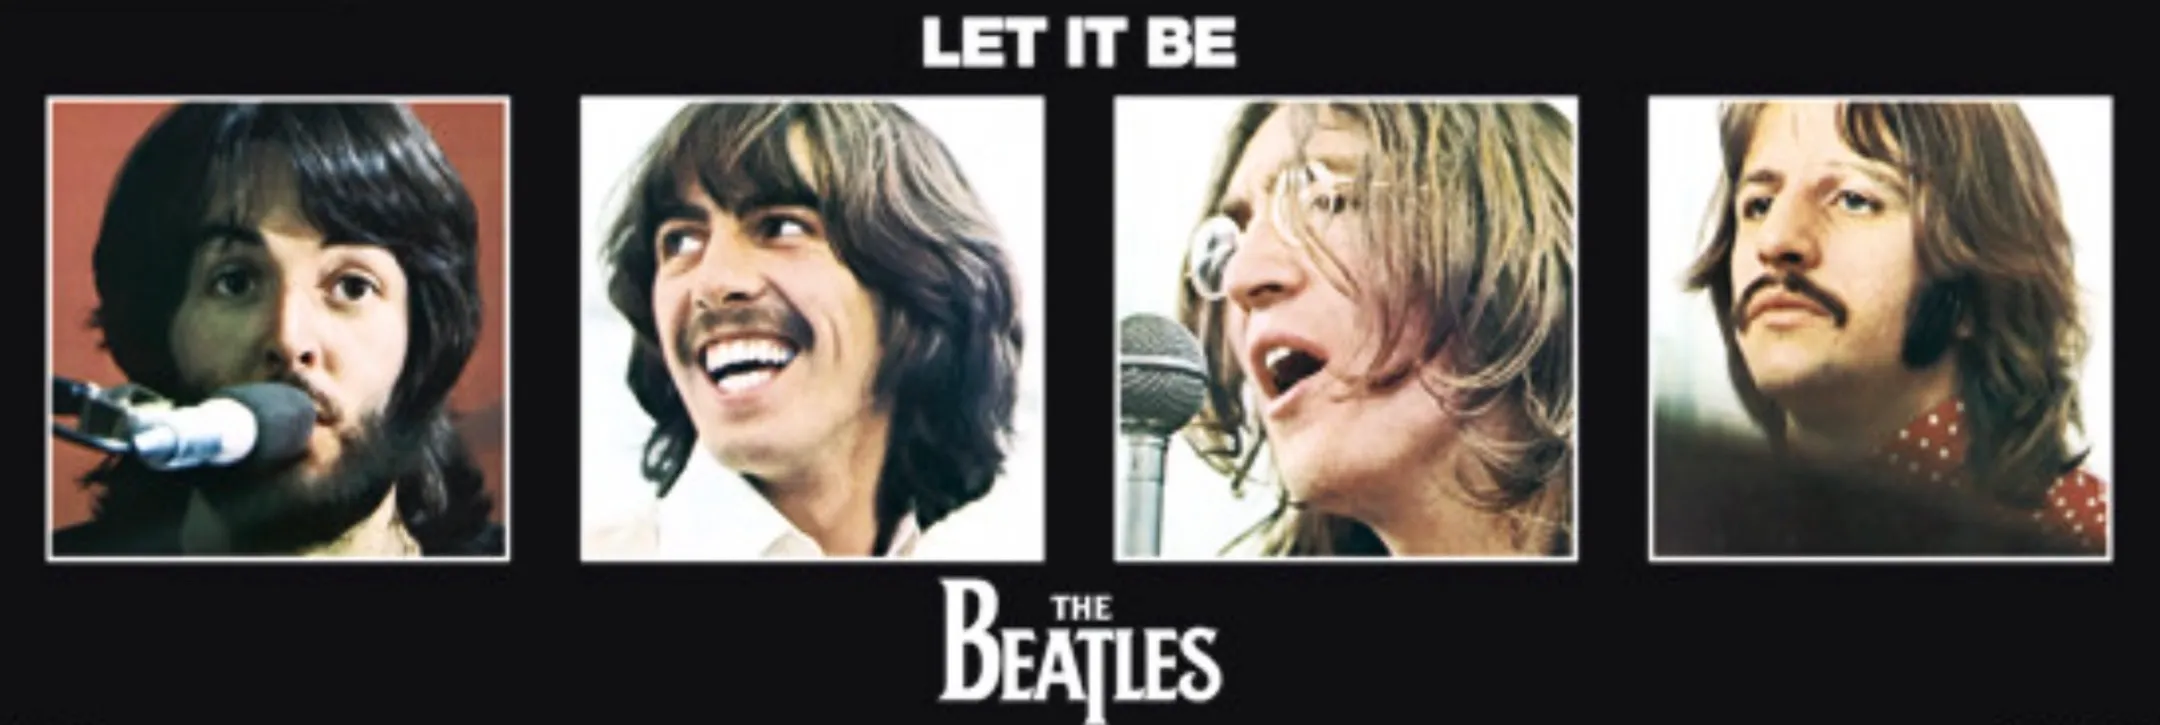 The Beatles Farewell: Let’s Explore “Let It Be” Album Journey